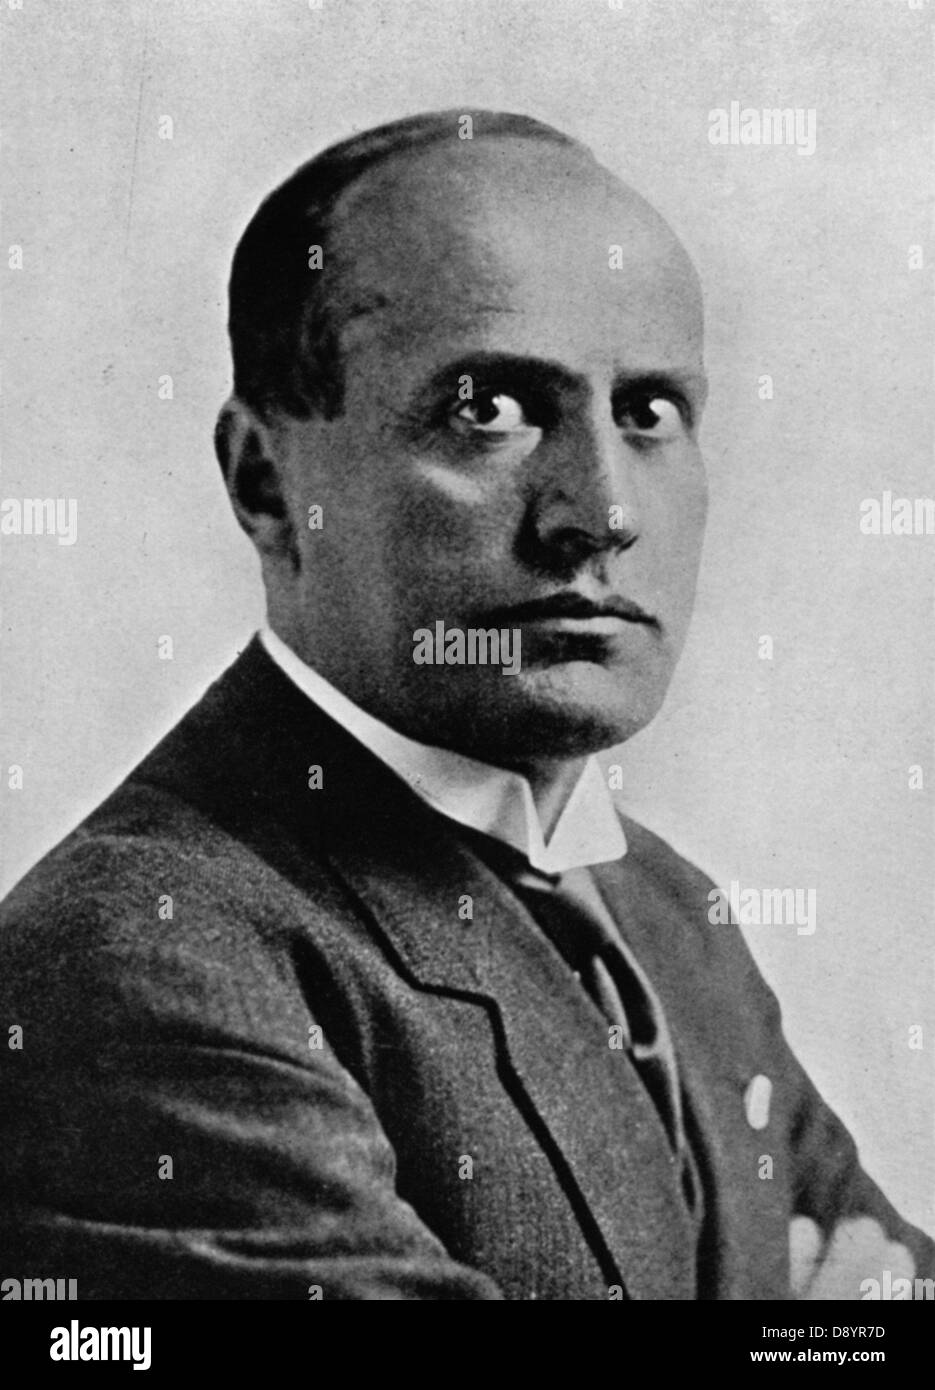 Portrait of Benito Mussolini a.k.a 'Il Duce' Italian fascist dictator Stock Photo